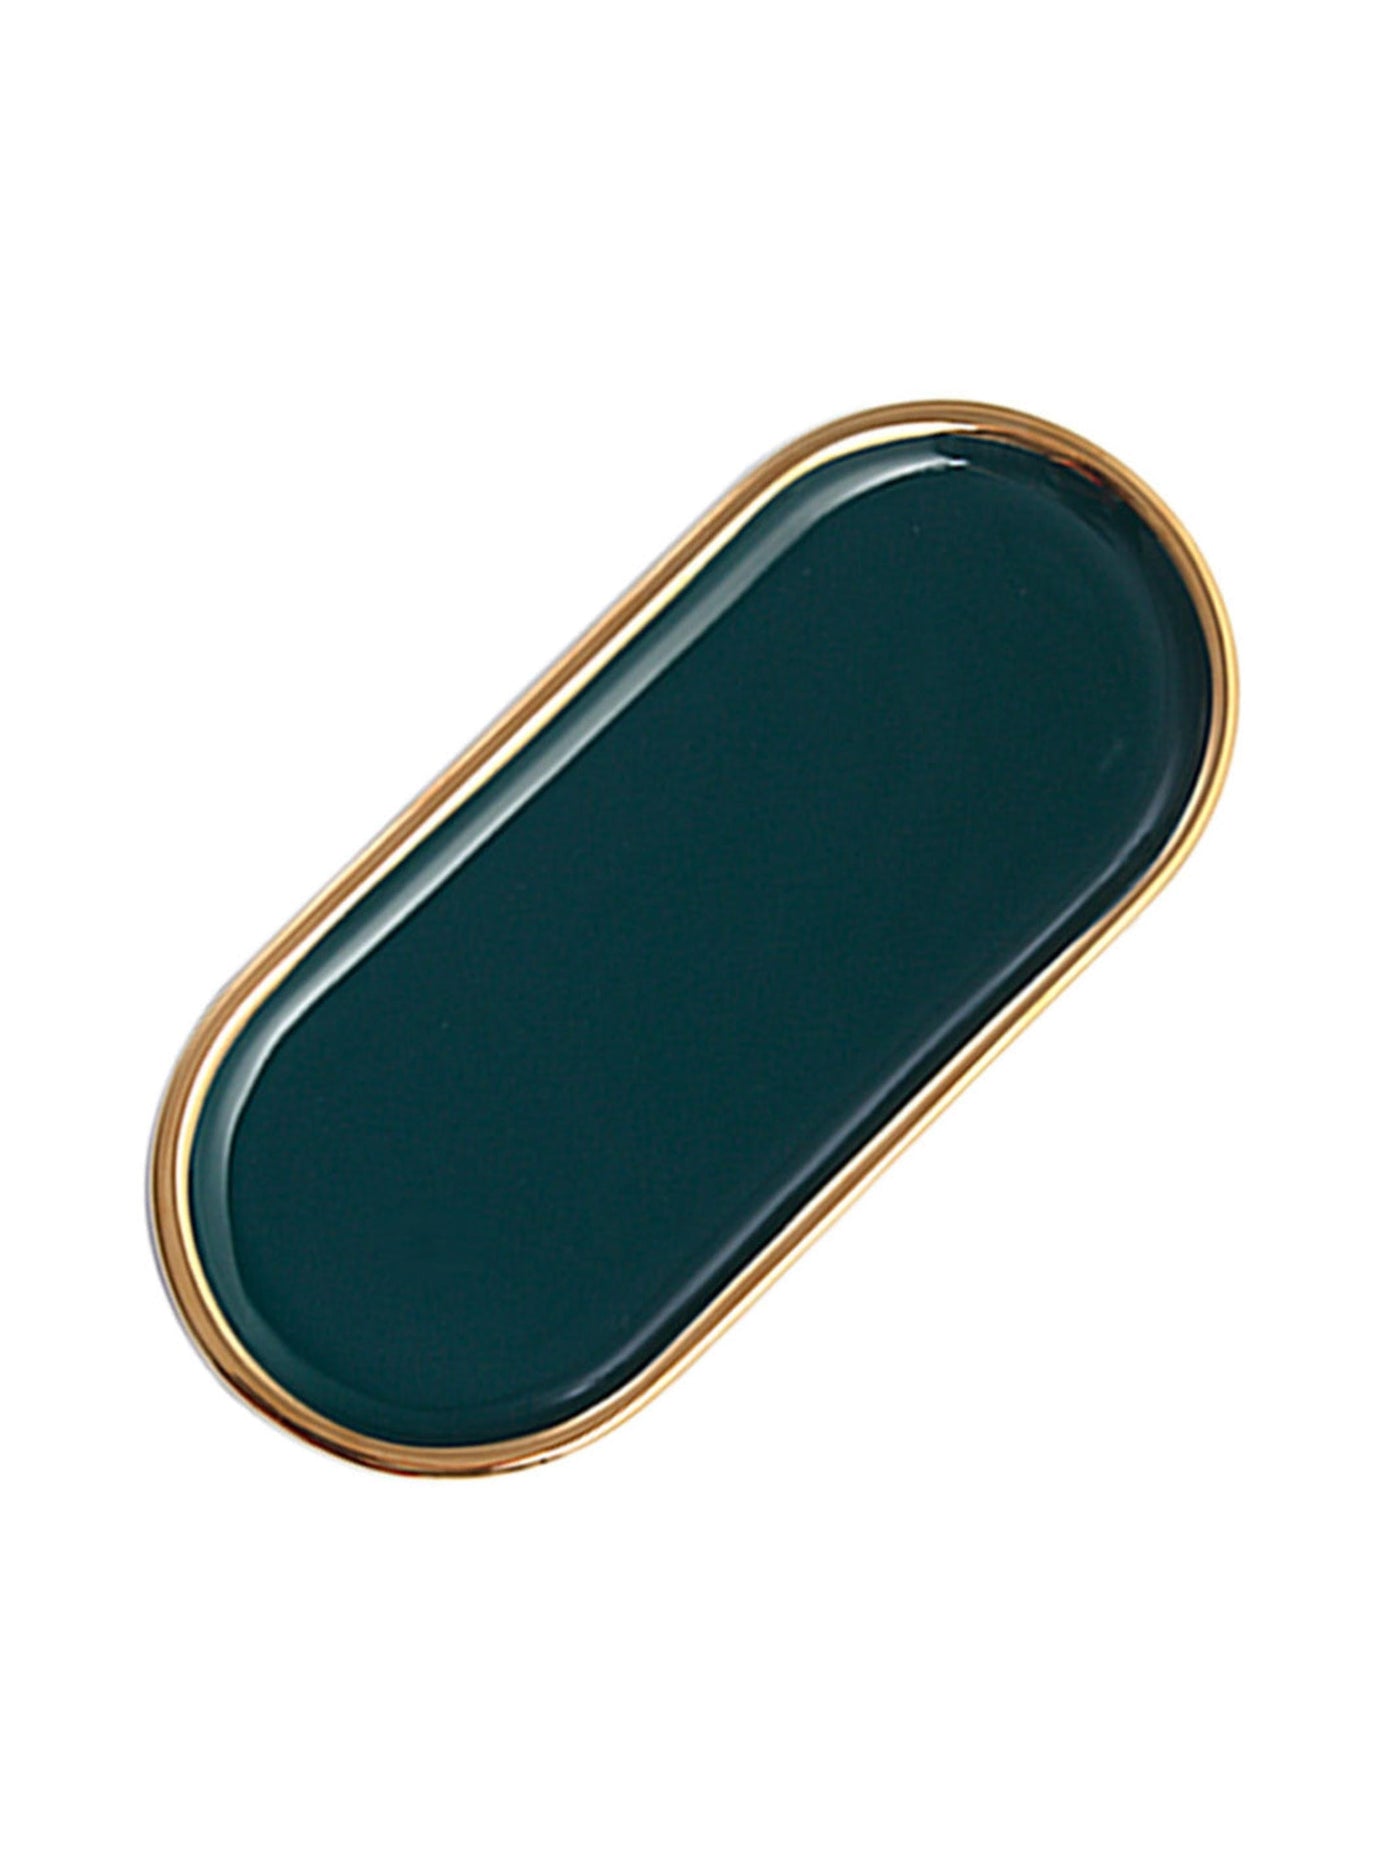 Elegance Green Cermic Platter